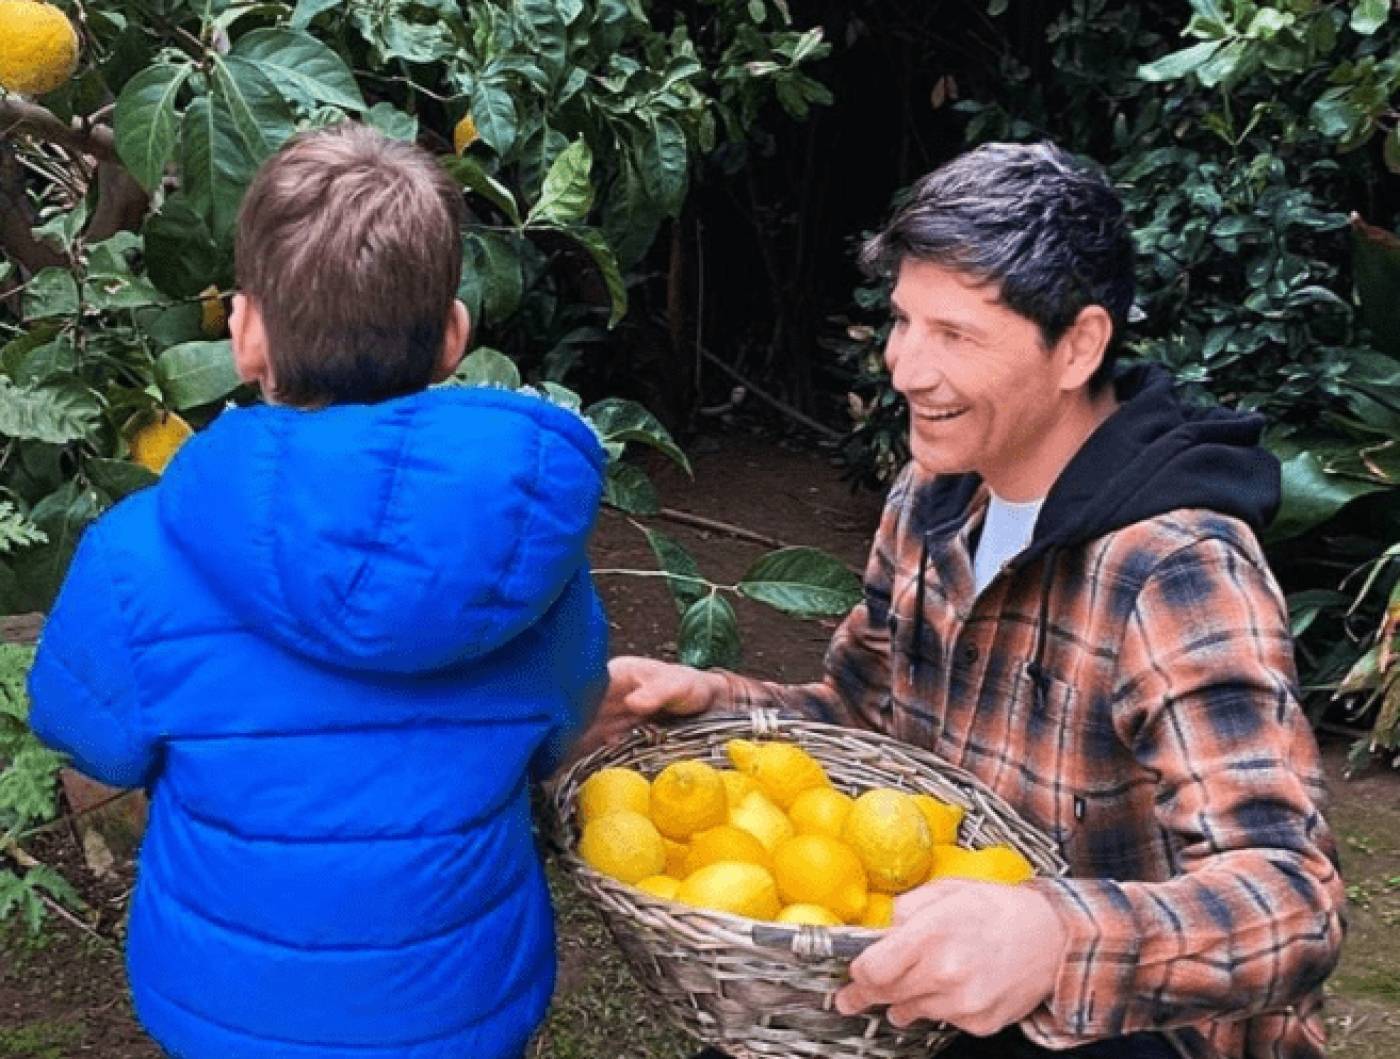 Σάκης Ρουβάς: Μαζί με τον γιο του στο περιβόλι - «Γιορτάζουμε την Άνοιξη με τους καρπούς της λεμονιάς»